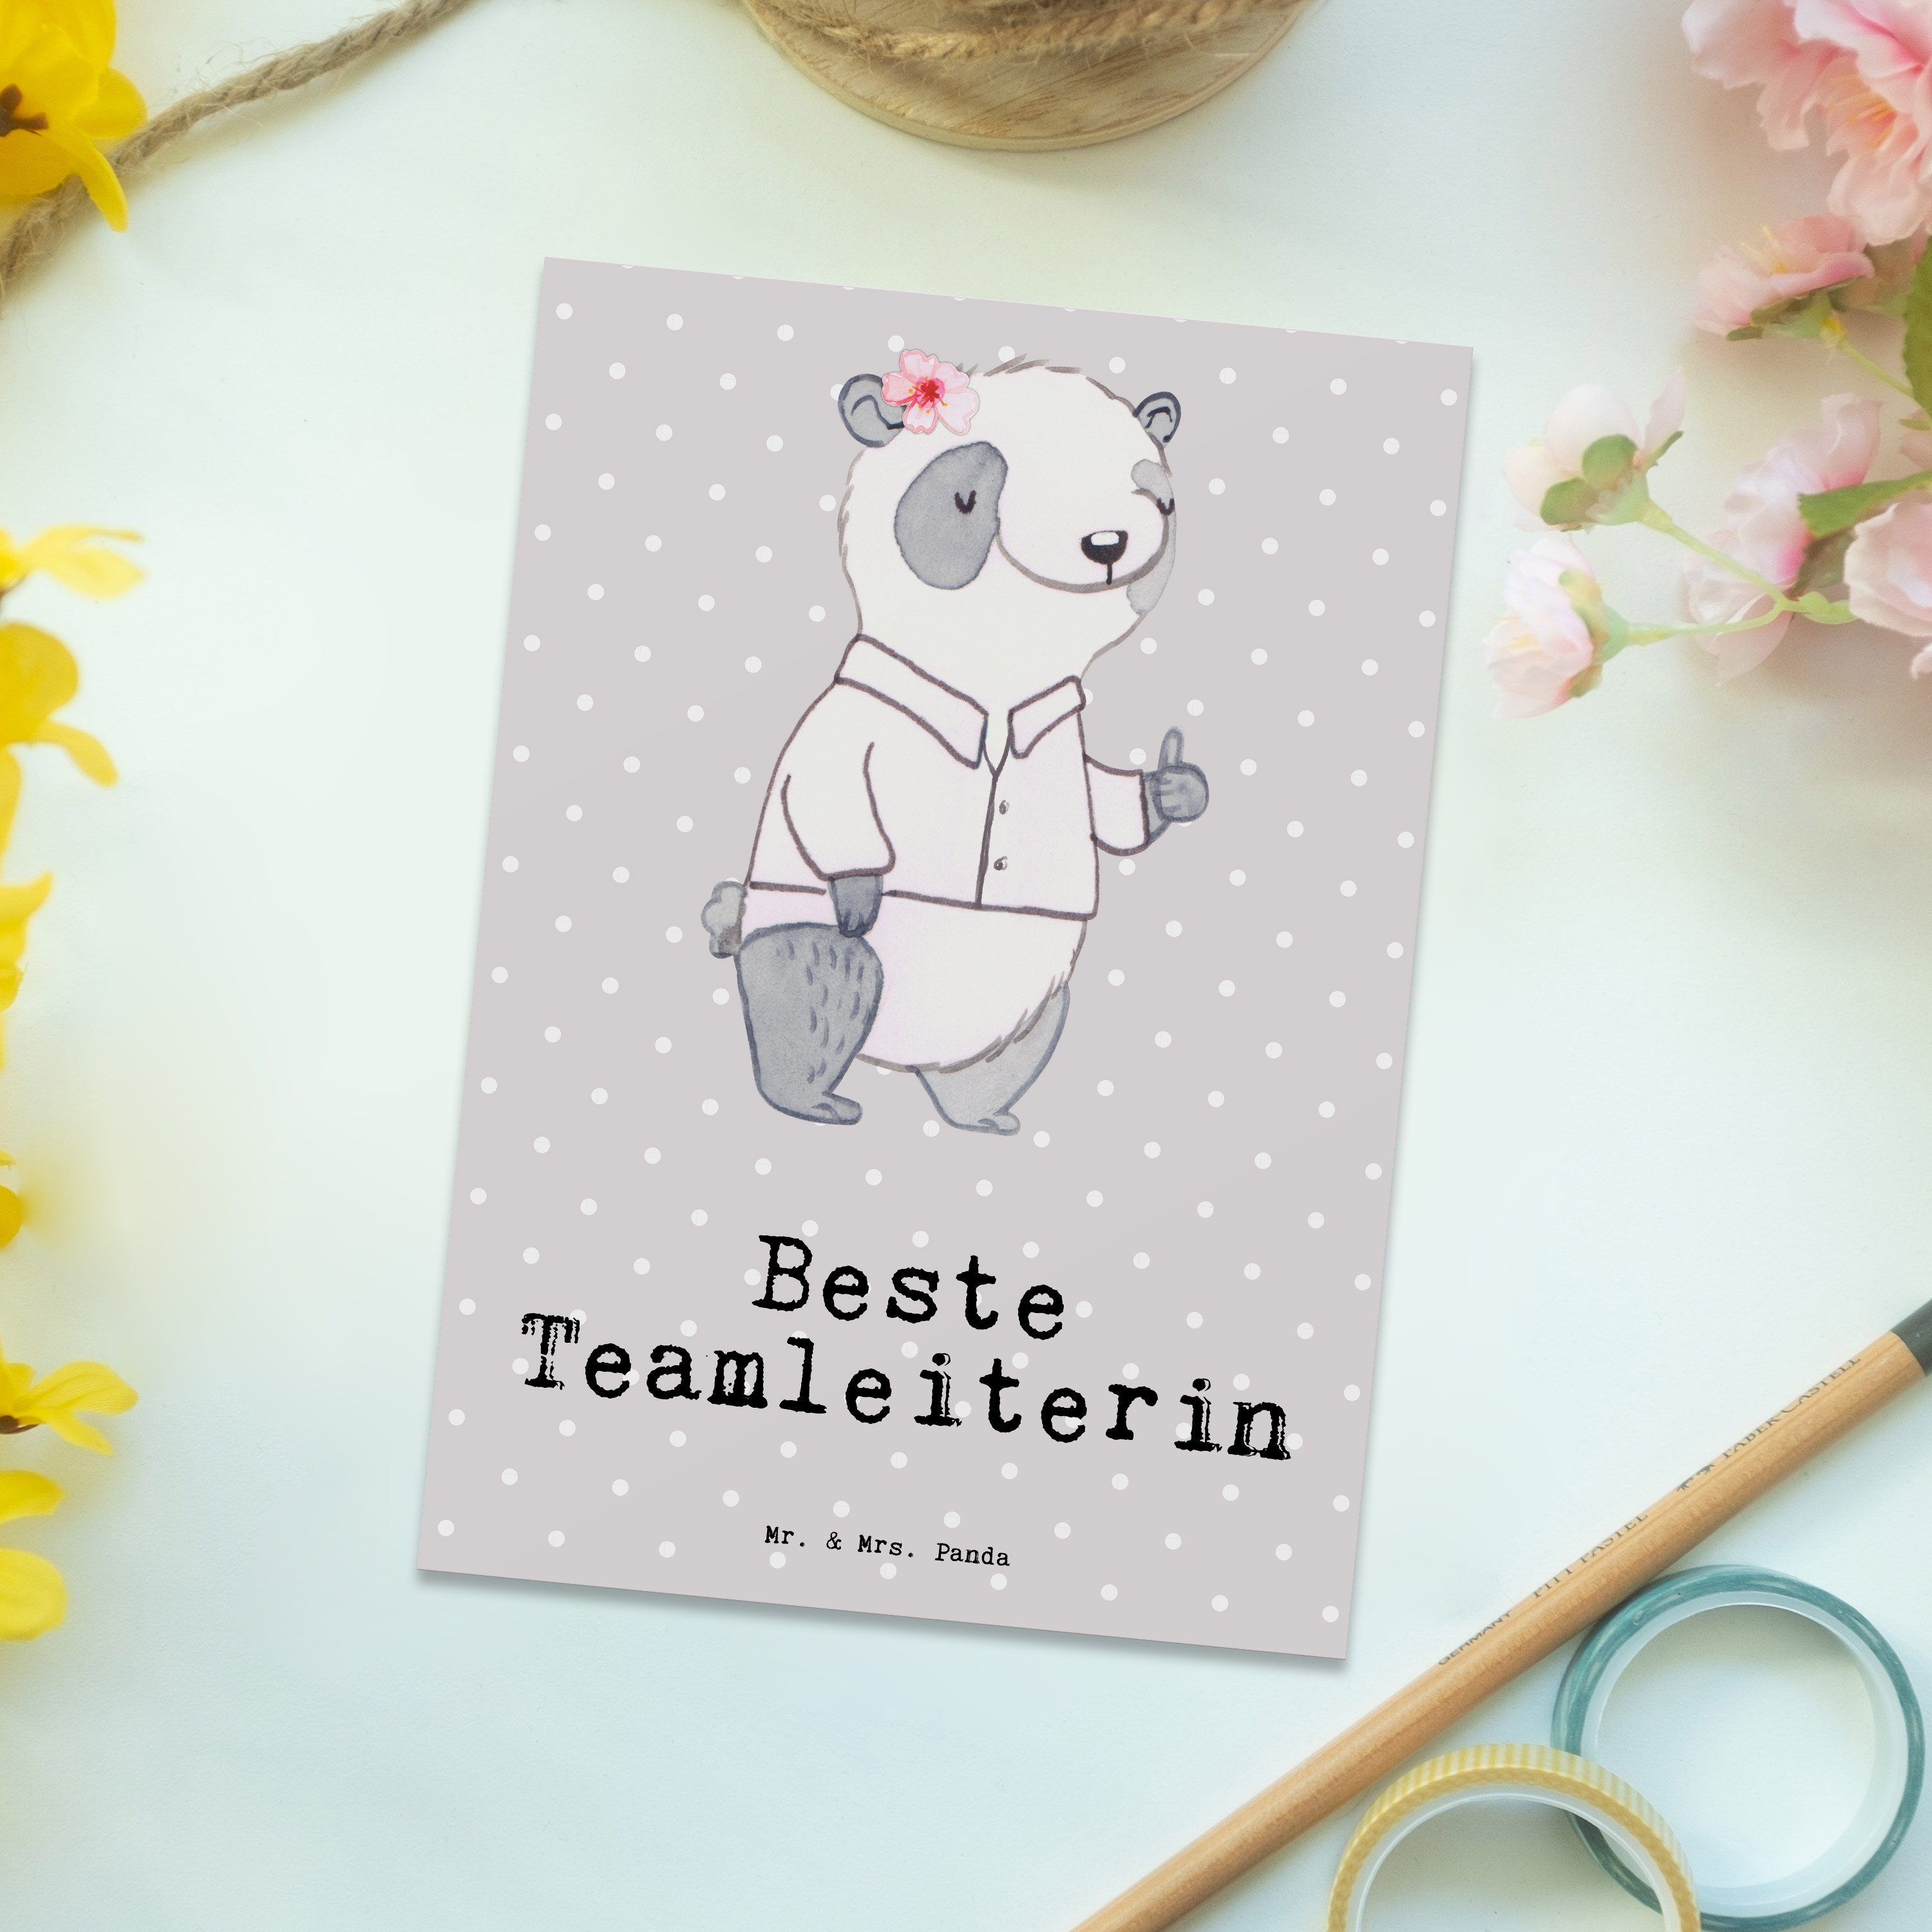 Mr. Beste Teamleiterin Grau Postkarte Mrs. Panda Panda - & Abs Pastell Geschenk, Geschenktipp, -